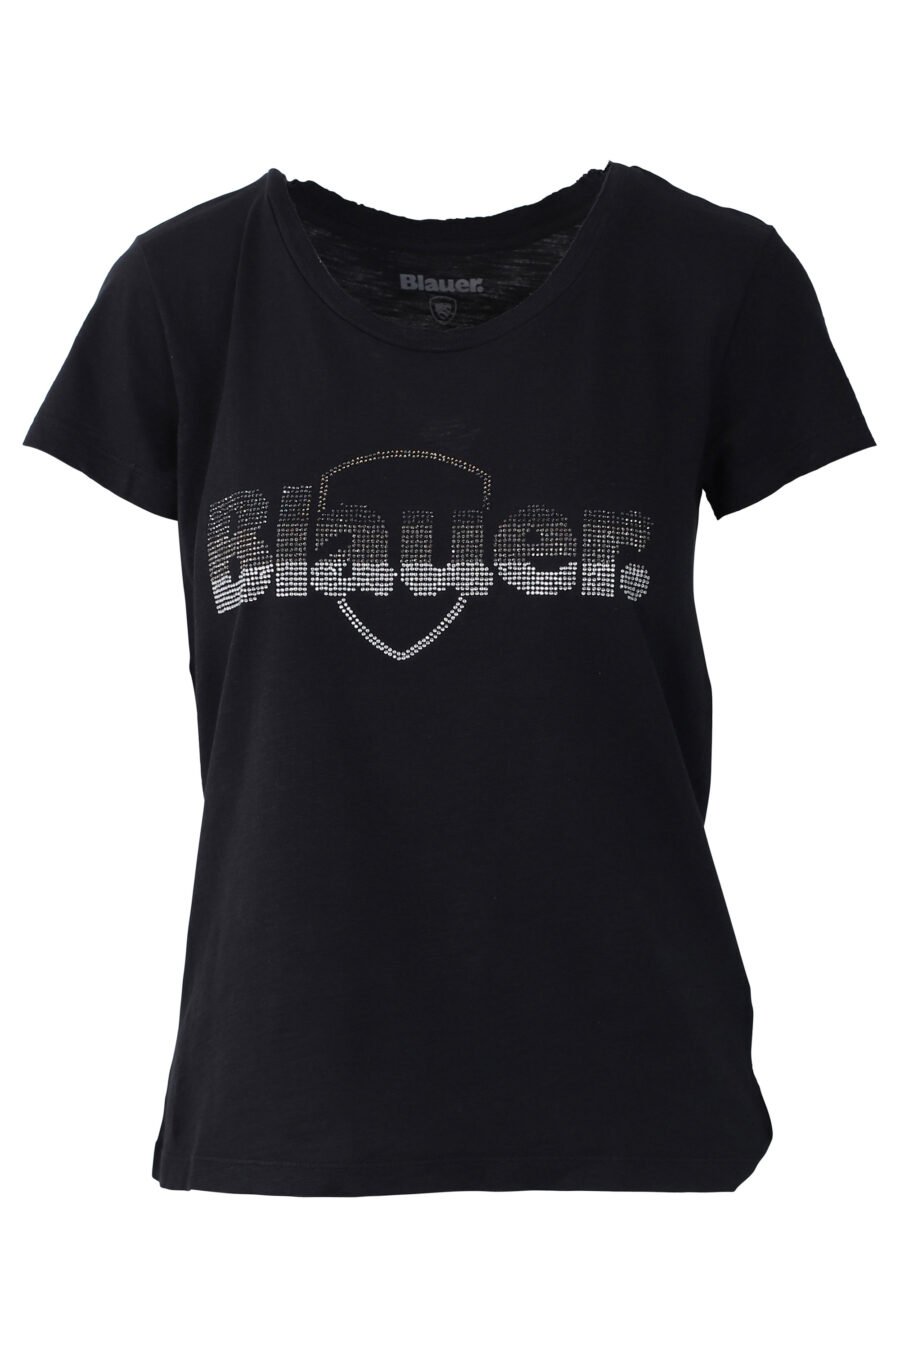 Black T-shirt with rhinestone embroidered maxilogo - IMG 0660